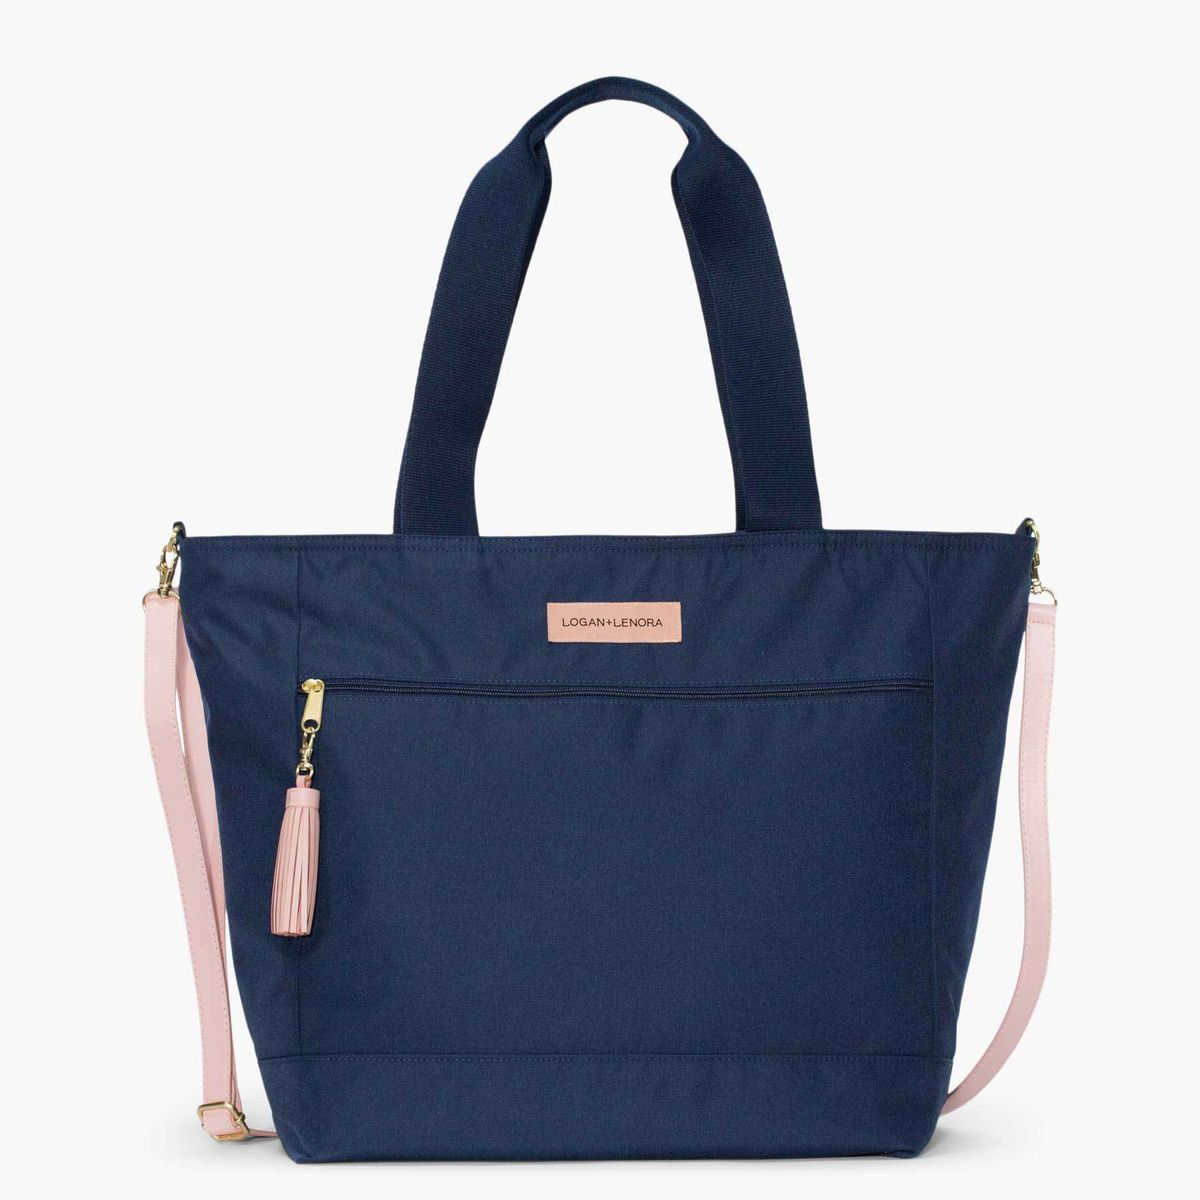 15.6 Laptop Bag for Women,Nylon Tote Bag Shoulder Bag Handbag Travel Work Bag w ID Badge Holder